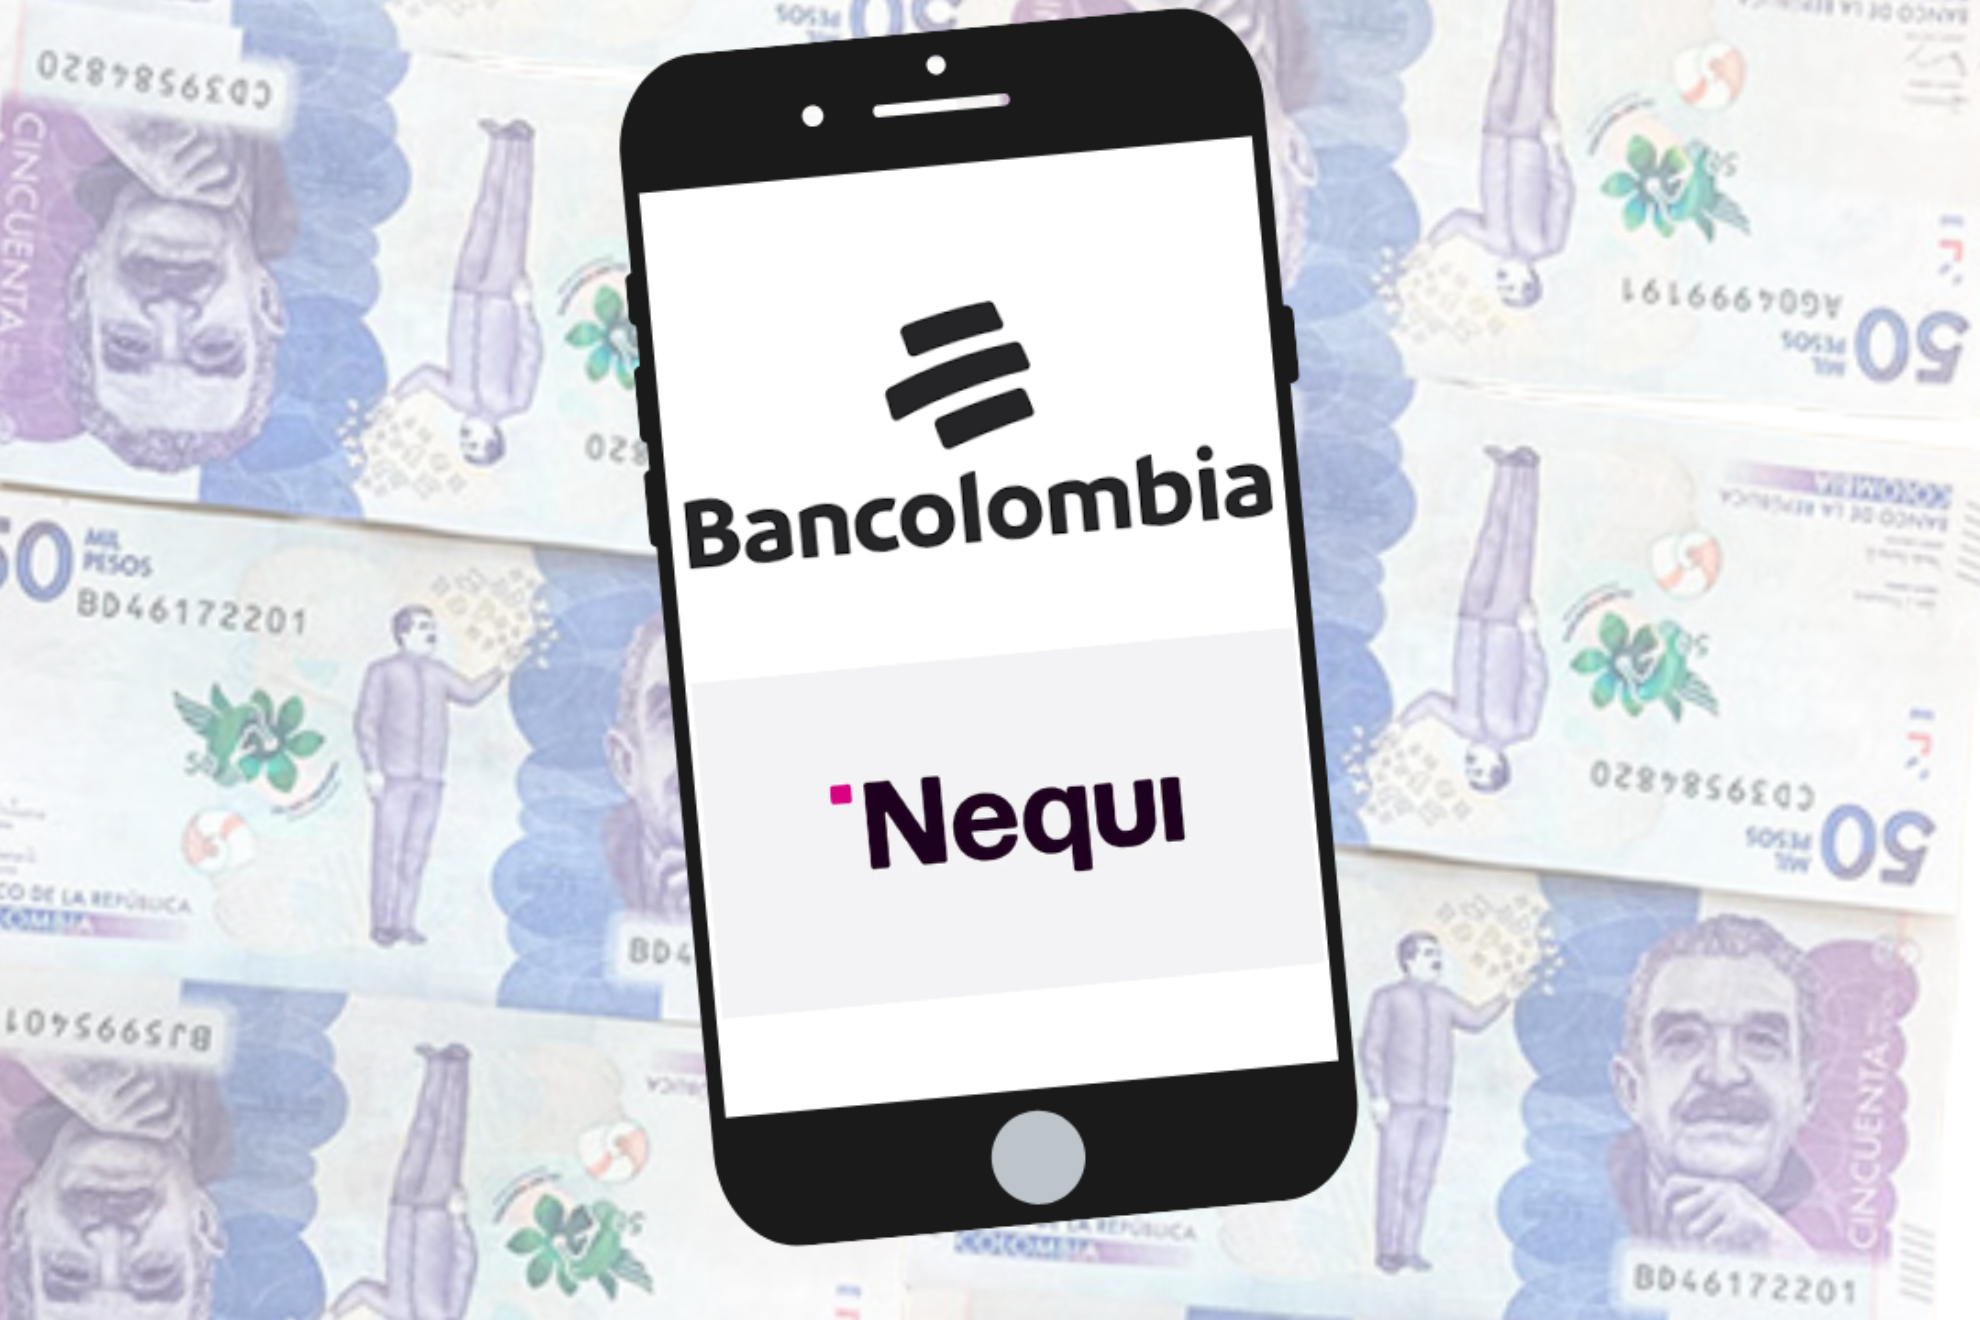 Bancolombia devuelve por transferencias a Nequi después de anunciar cambios (Banco de la República, Bancolombia, Nequi)